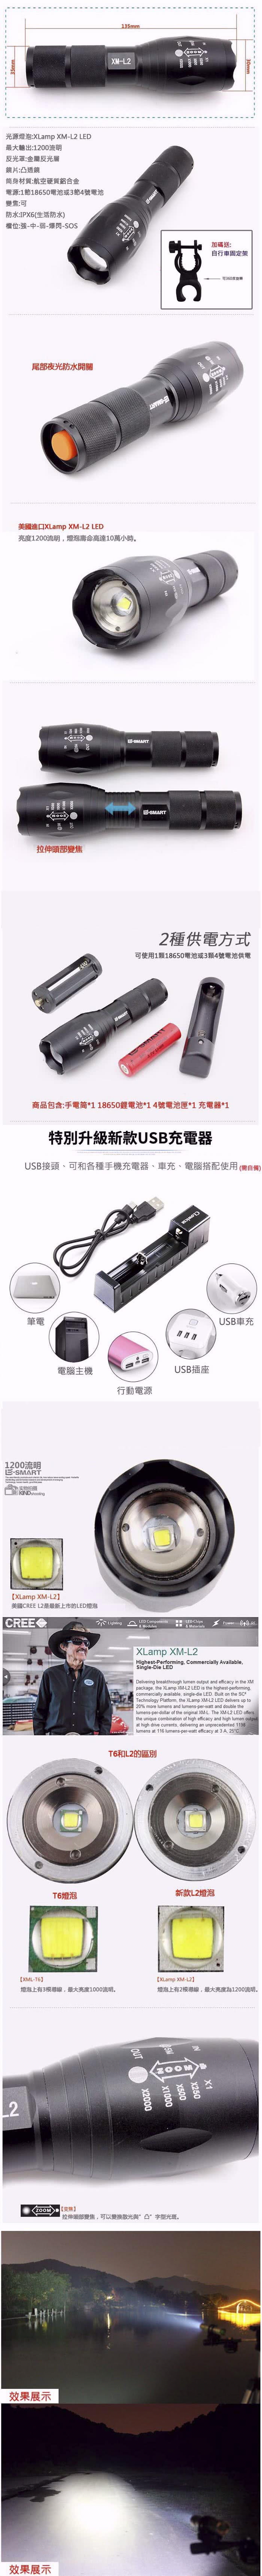 強光變焦手電筒 XM-L2 LED 燈泡戰術手電筒 配USB充電器 1